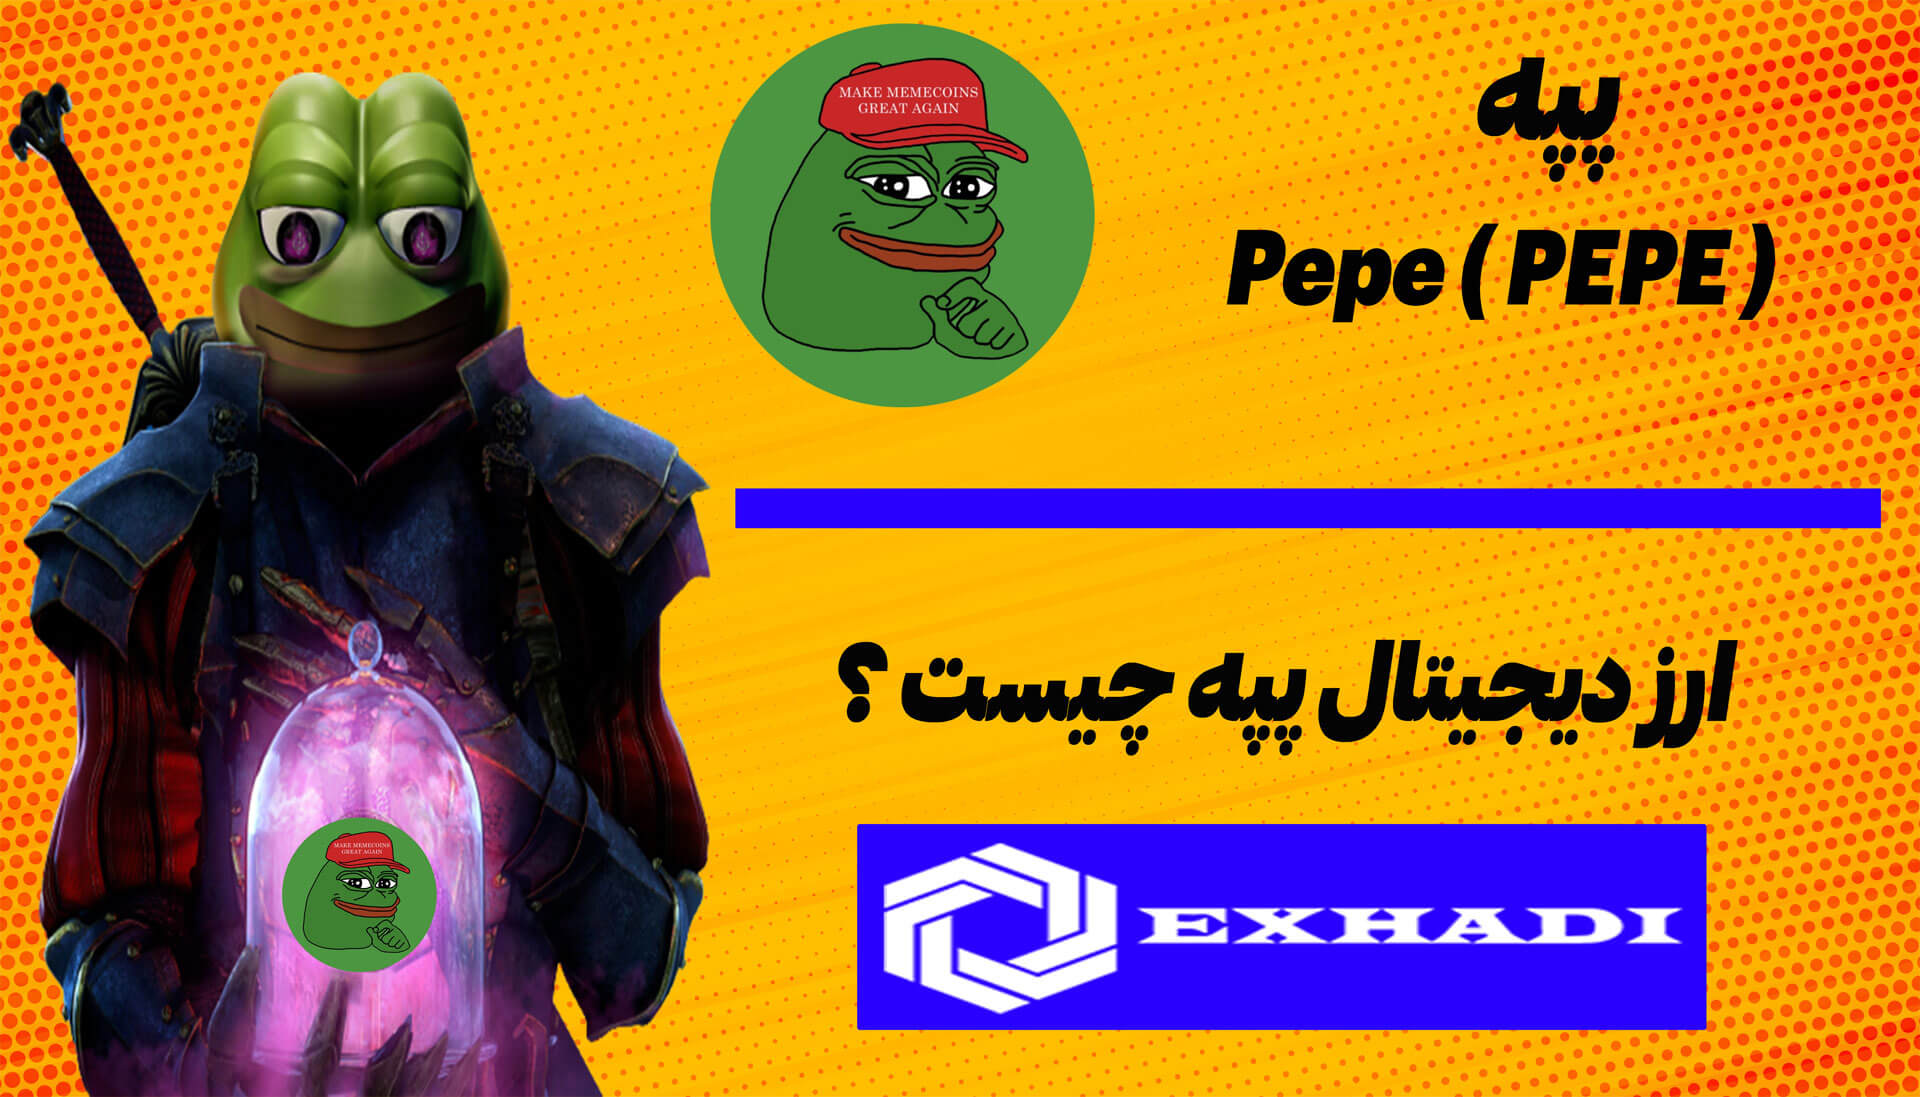 پپه Pepe چیست ؟ در ایکس هادی | خرید پپه Pepe | فروش پپه Pepe | خرید و فروش پپه Pepe | پپه Pepe